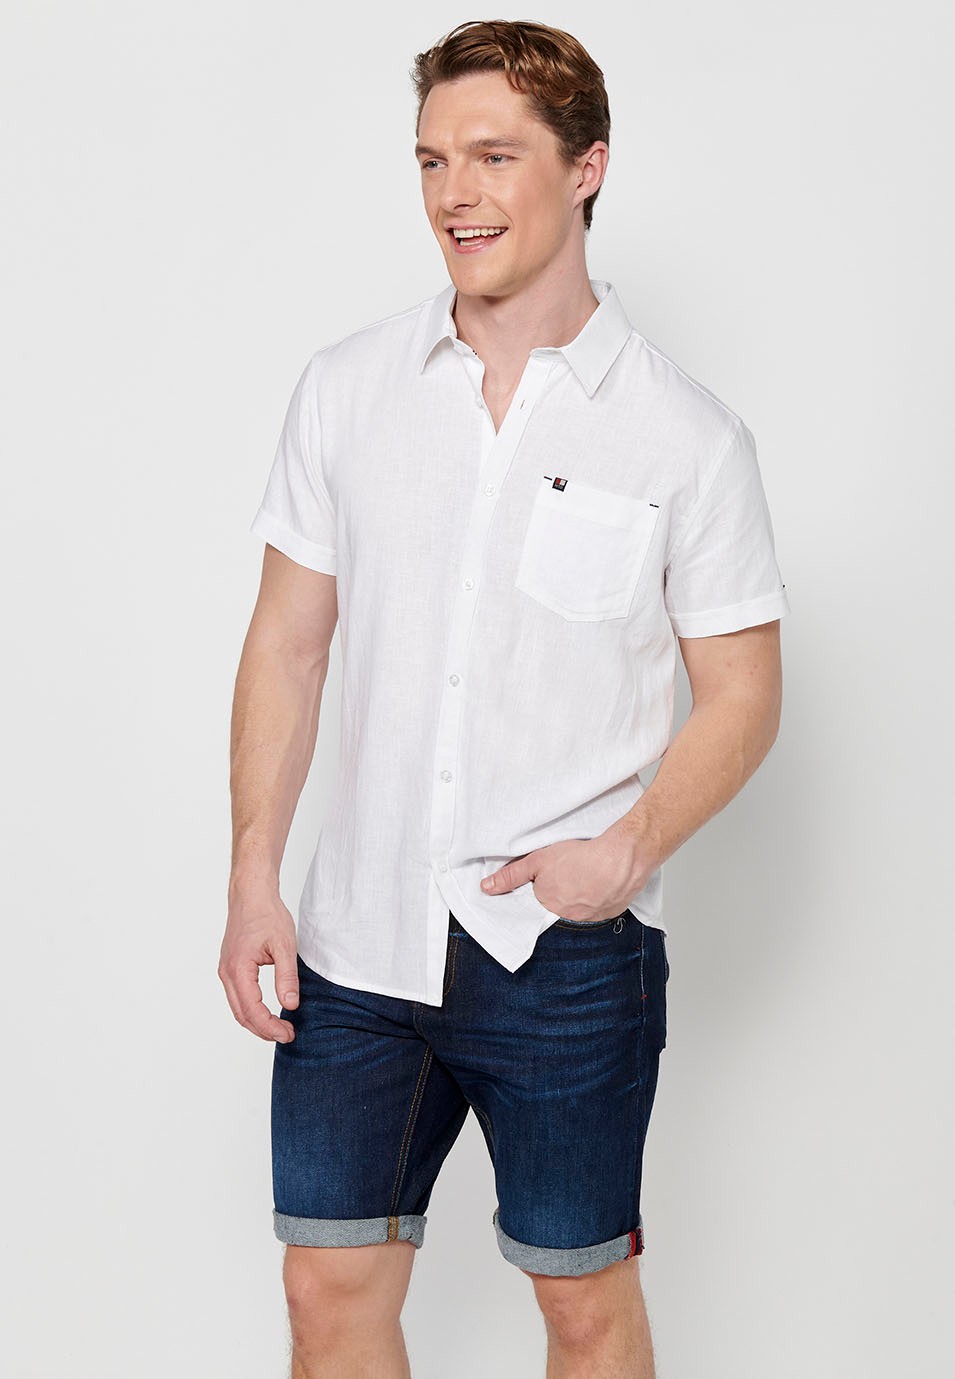 Chemise en lin à manches courtes, blanche, pour homme